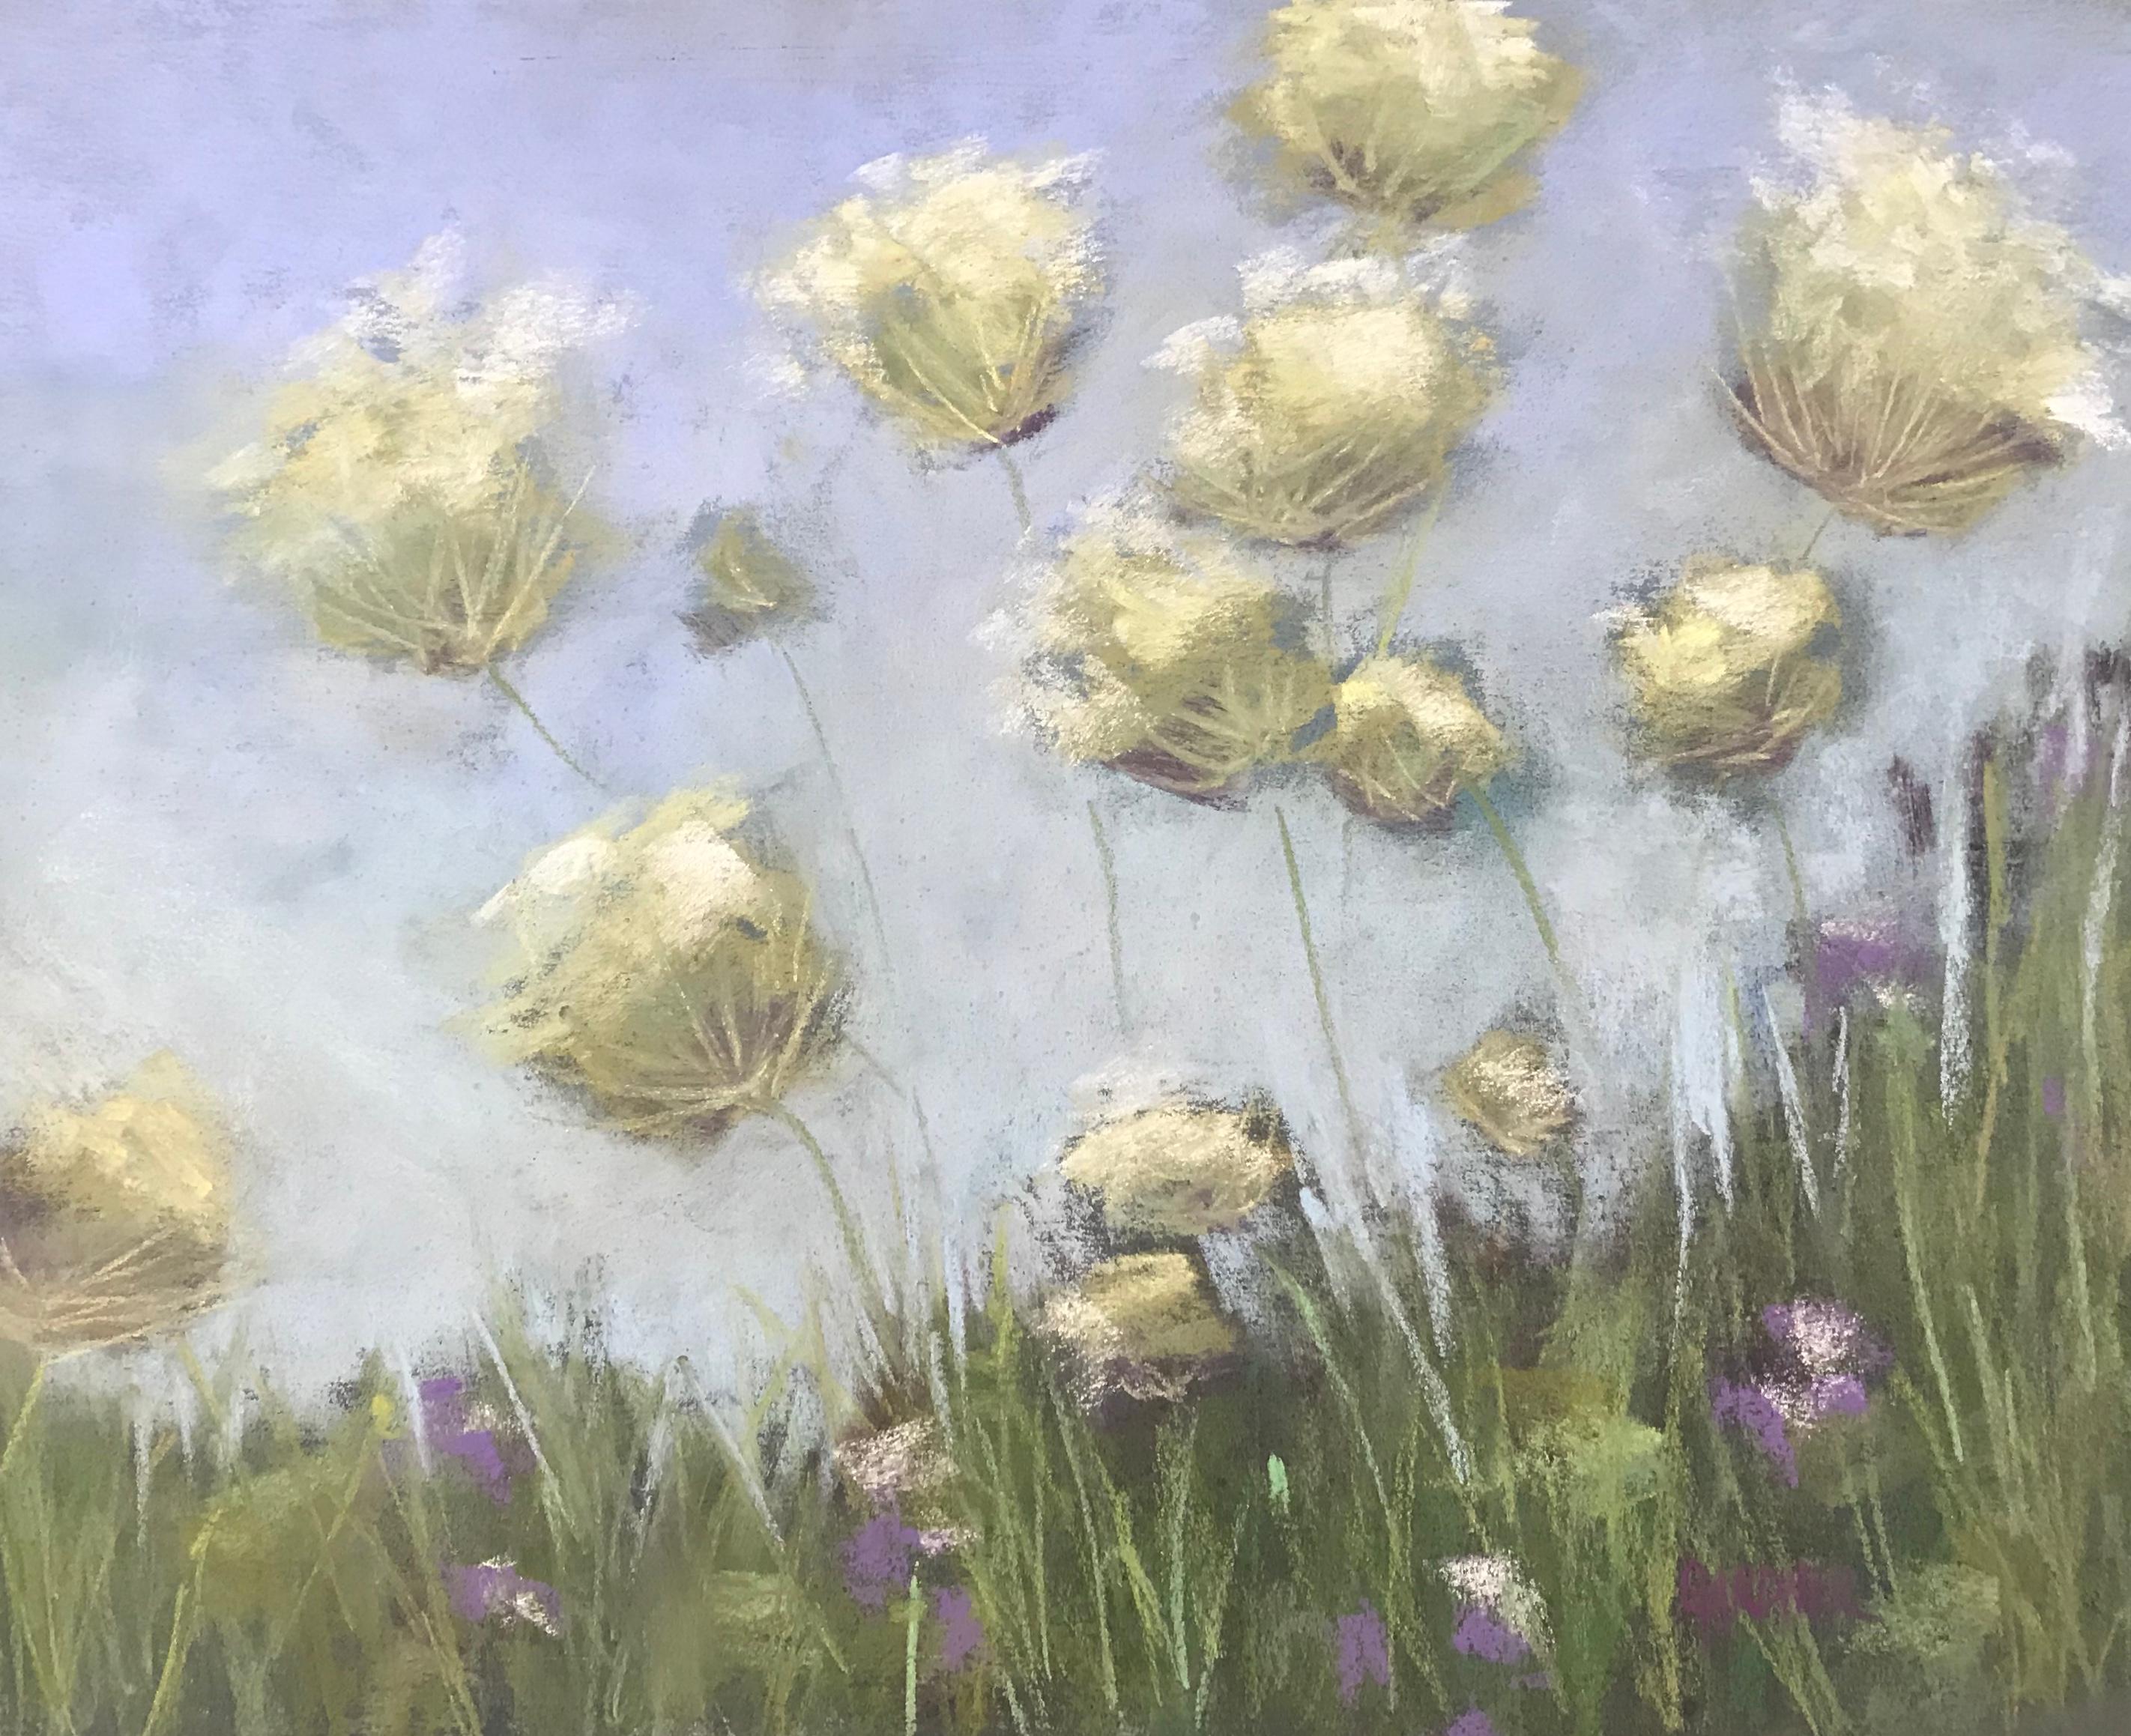 Dina Gardner Still-Life Painting - Long Live The Queen, Framed Original Pastel Floral Still Life Painting, 2021